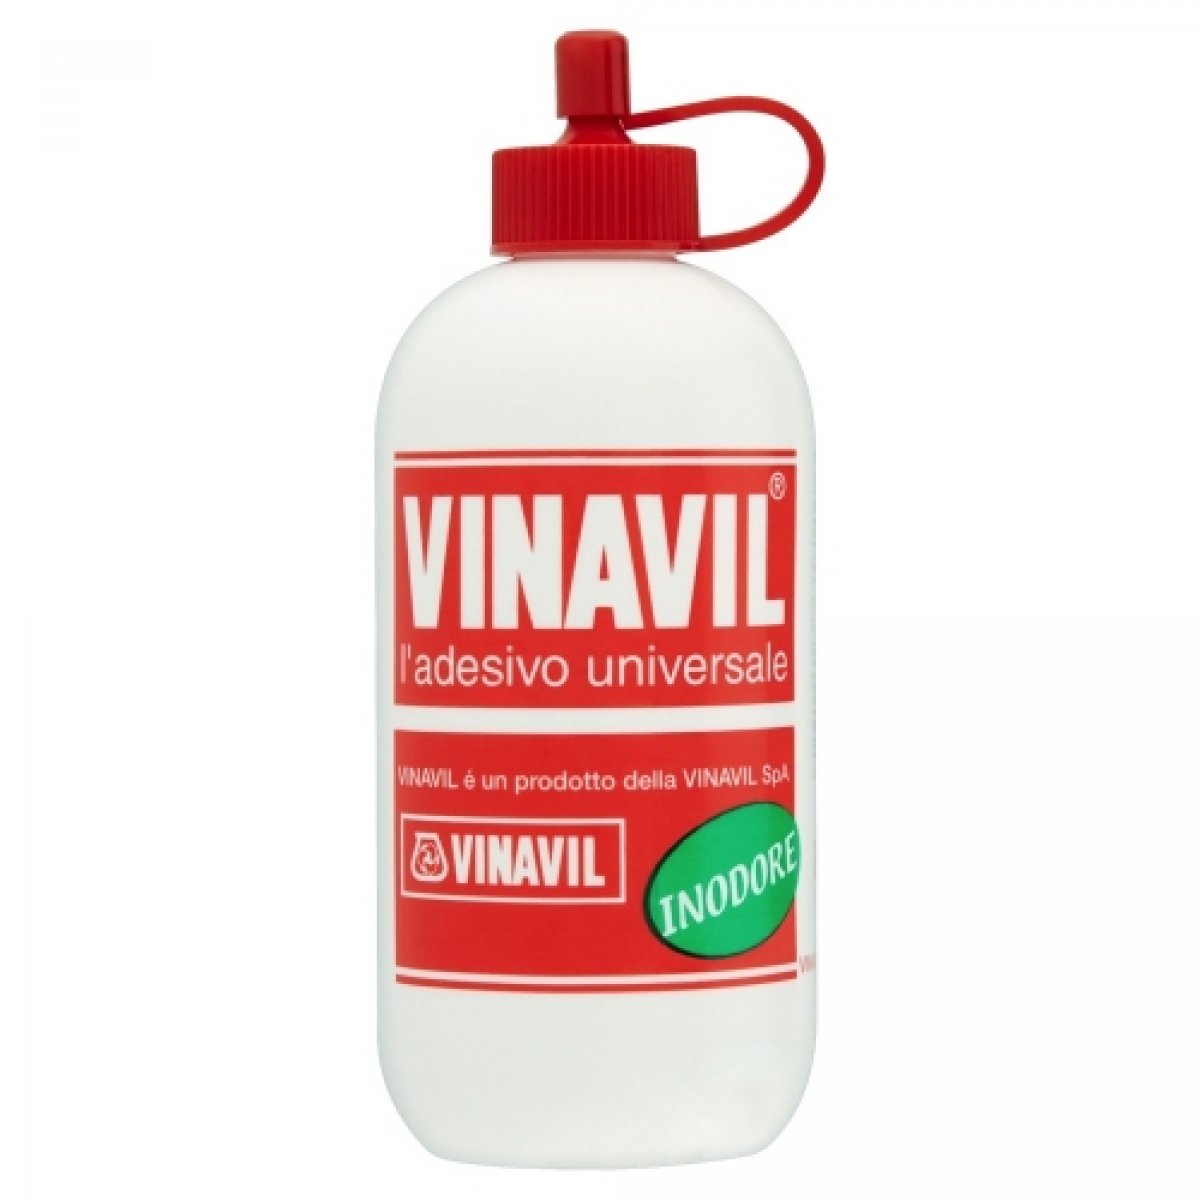 Colla Vinilica Vinavil Universale, Senza solventi, inodore, trasparente dopo l’essiccazione. 100g Bianco VINAVIL